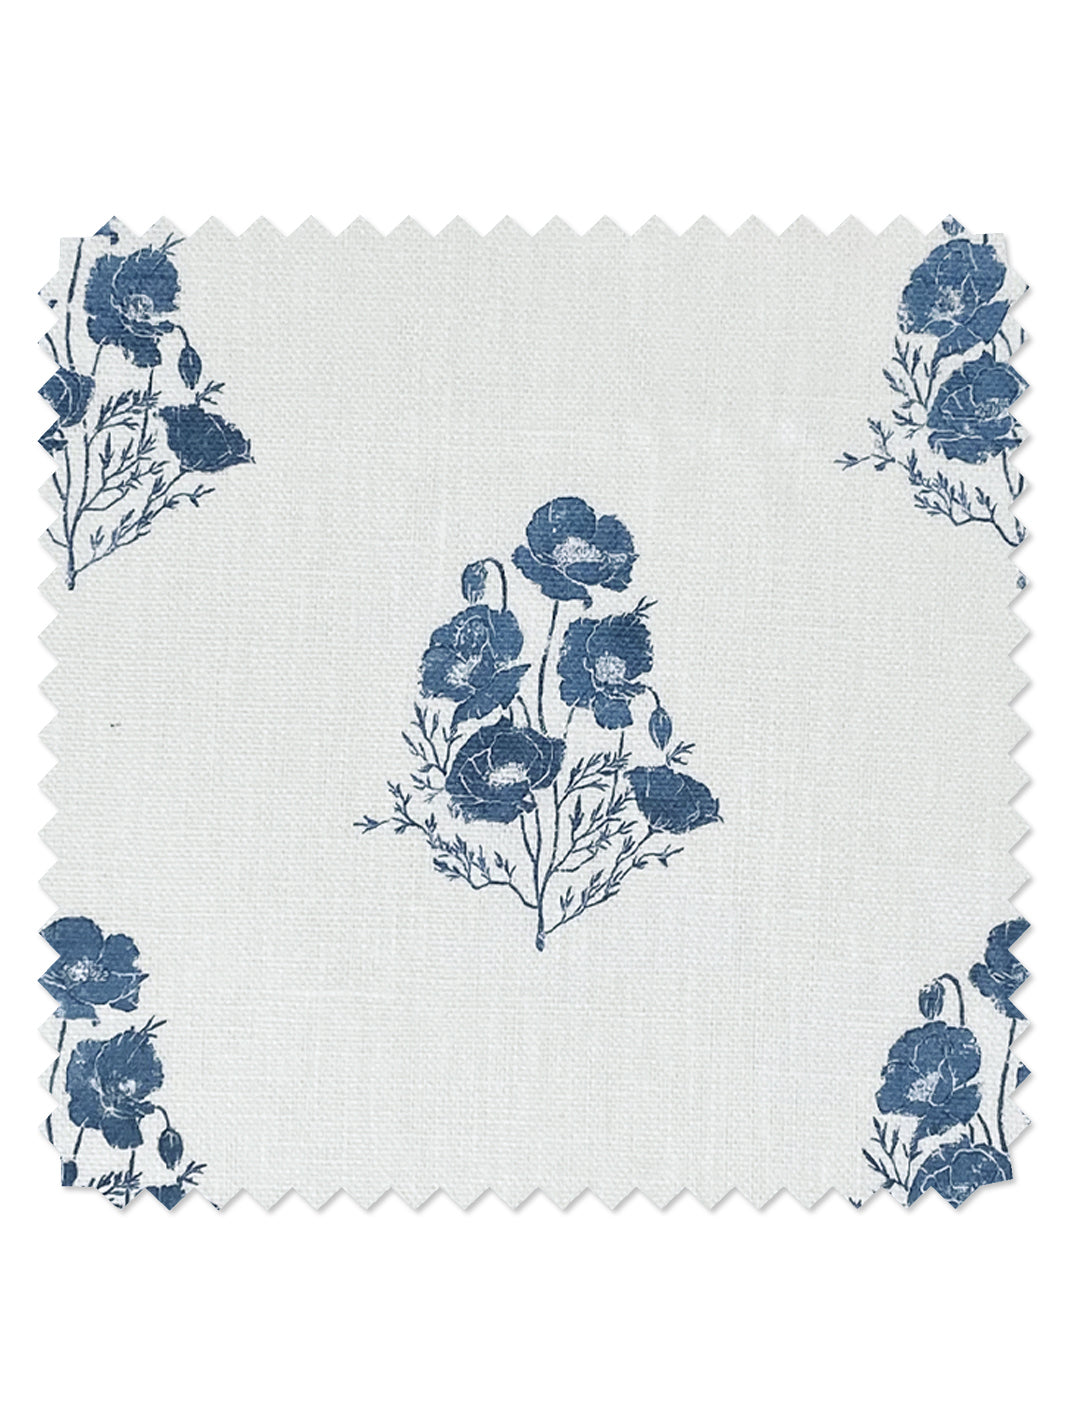 &#39;California Poppy&#39; Linen Fabric - Darker Blue